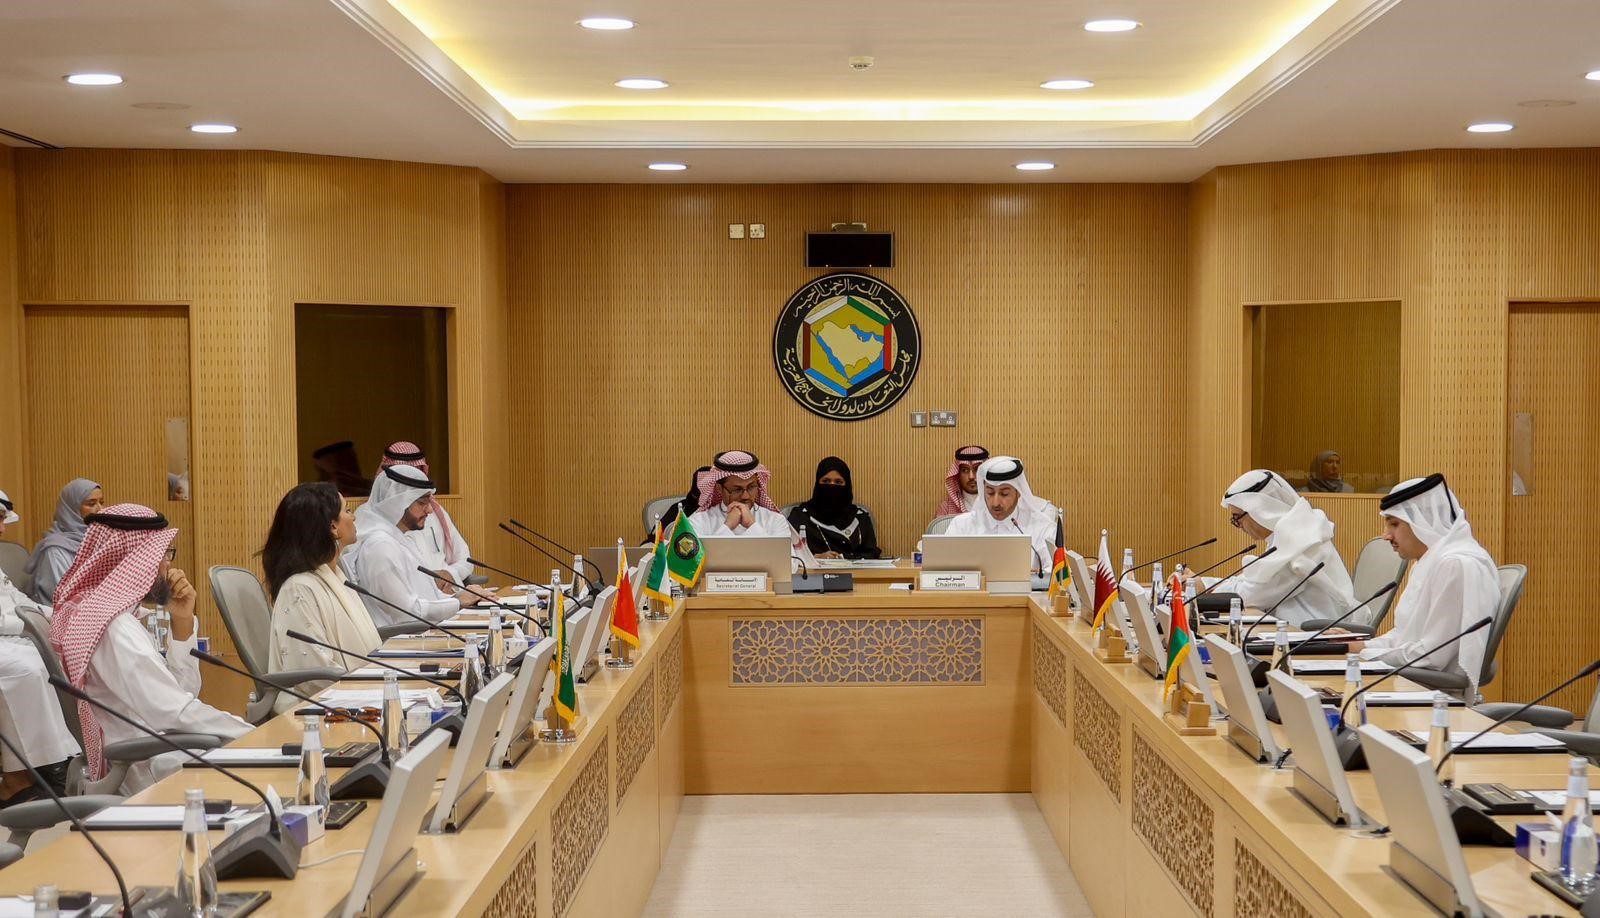 دولة قطر تترأس الاجتماع التنسيقي الأول لمسؤولي المعاهد والأكاديميات الدبلوماسية بدول مجلس التعاون